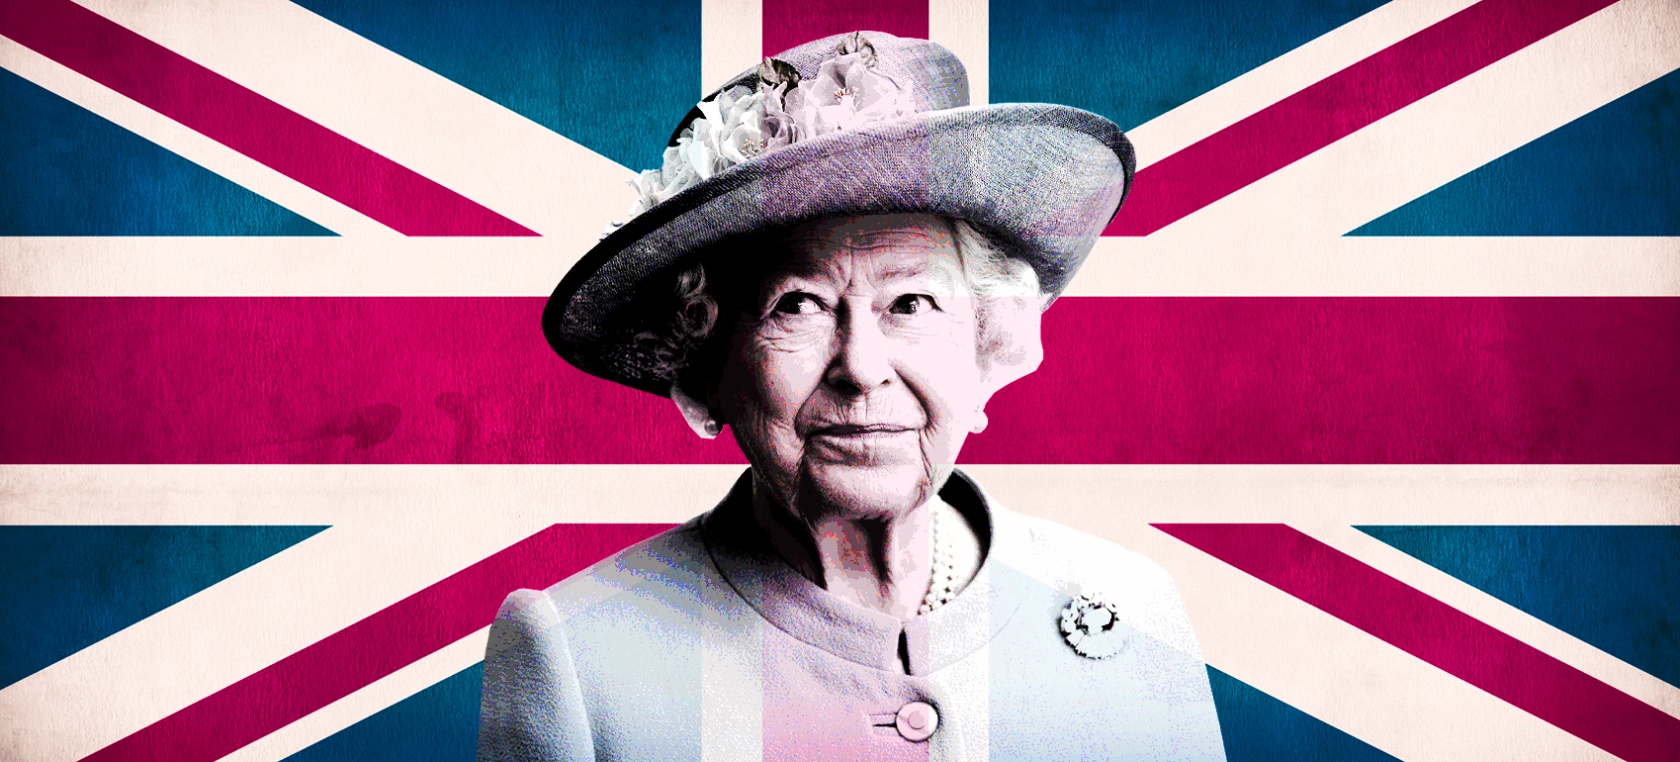 Muere la reina Isabel II de Inglaterra a los 96 años